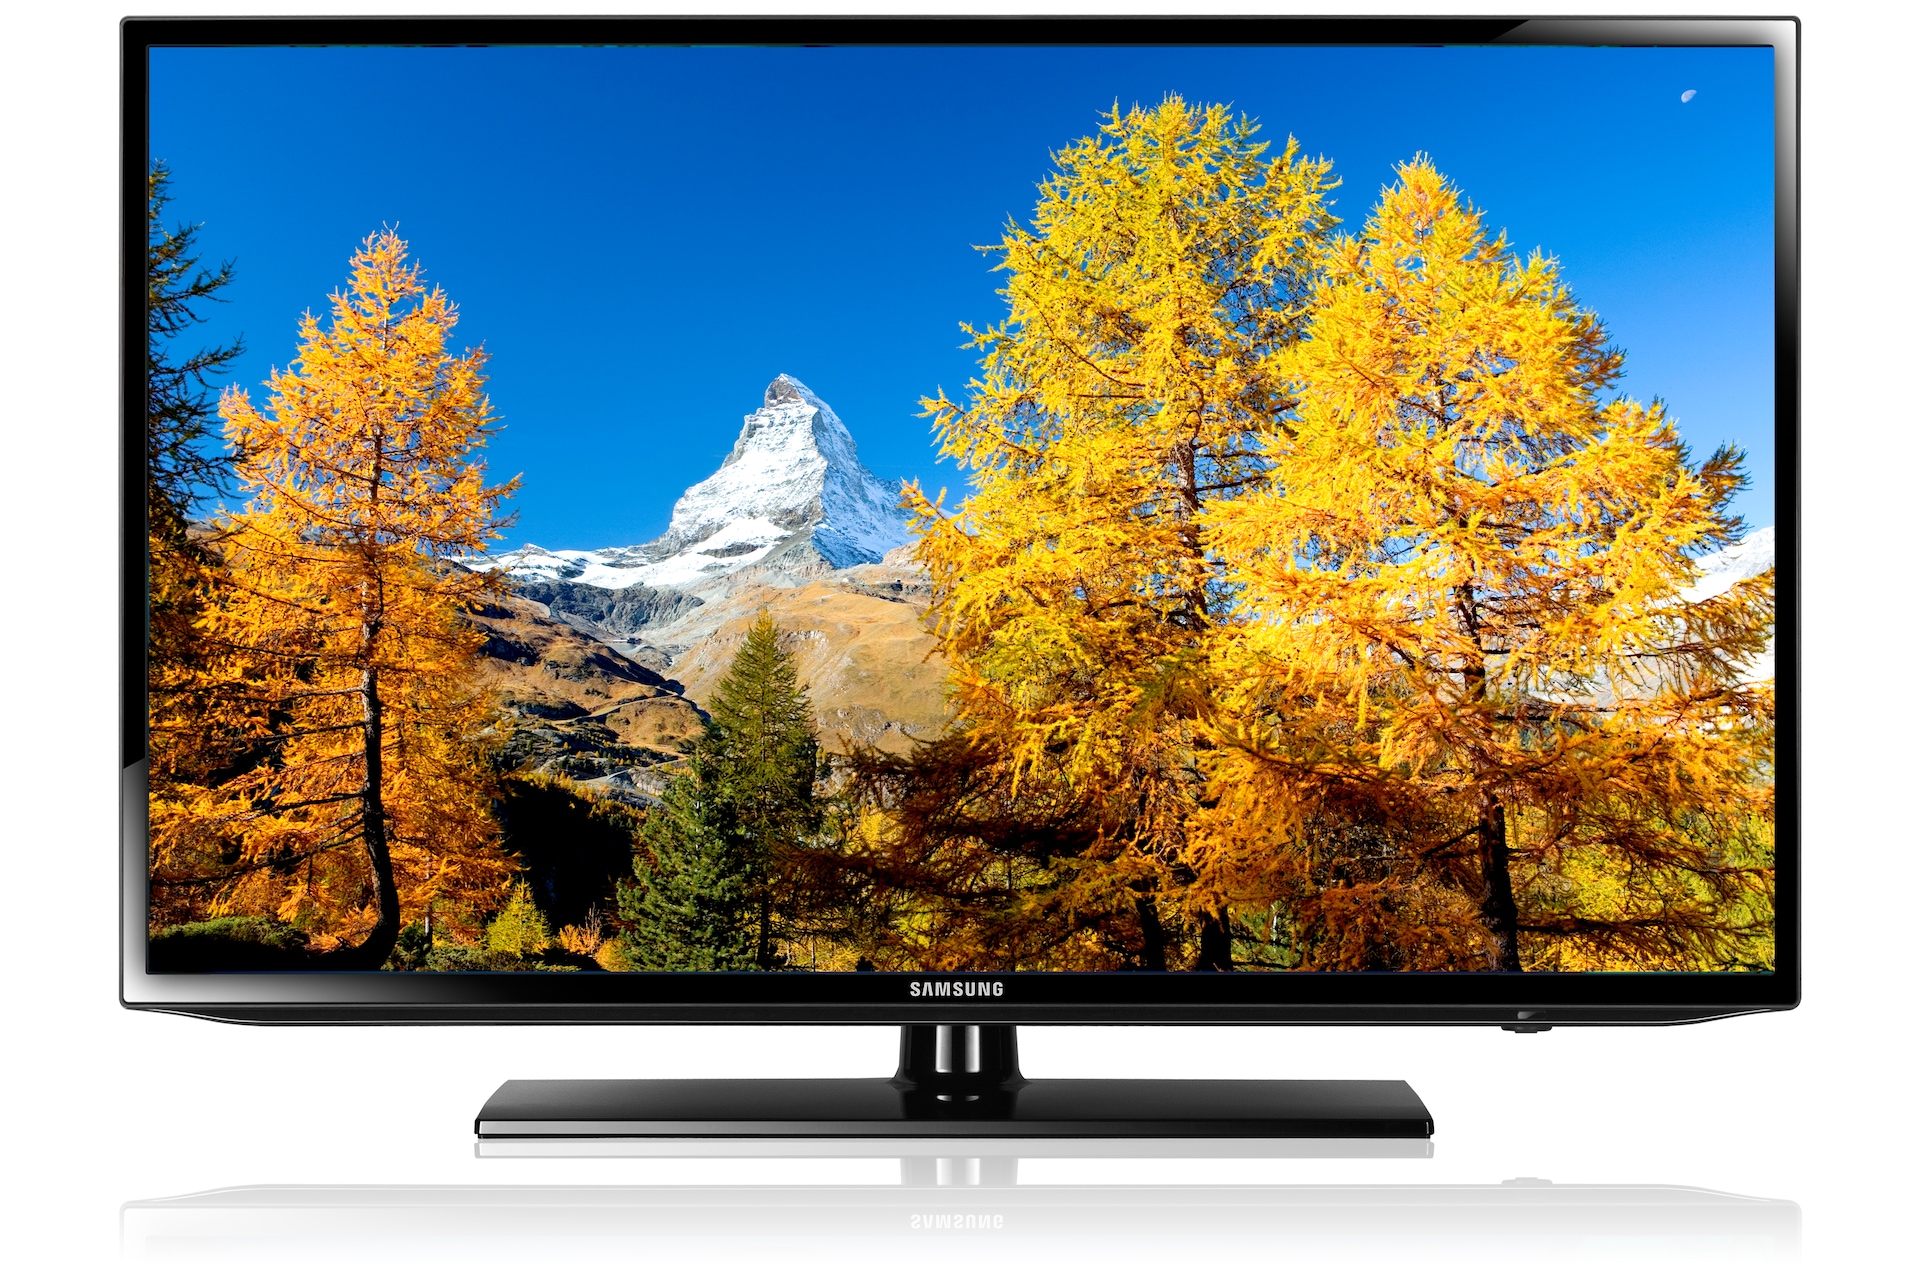 Купить телевизор в омске недорого. Samsung ue32eh5007k. Телевизор самсунг модель ue32eh5307. Samsung ue40eh5007k. Led Samsung ue32eh5007k.